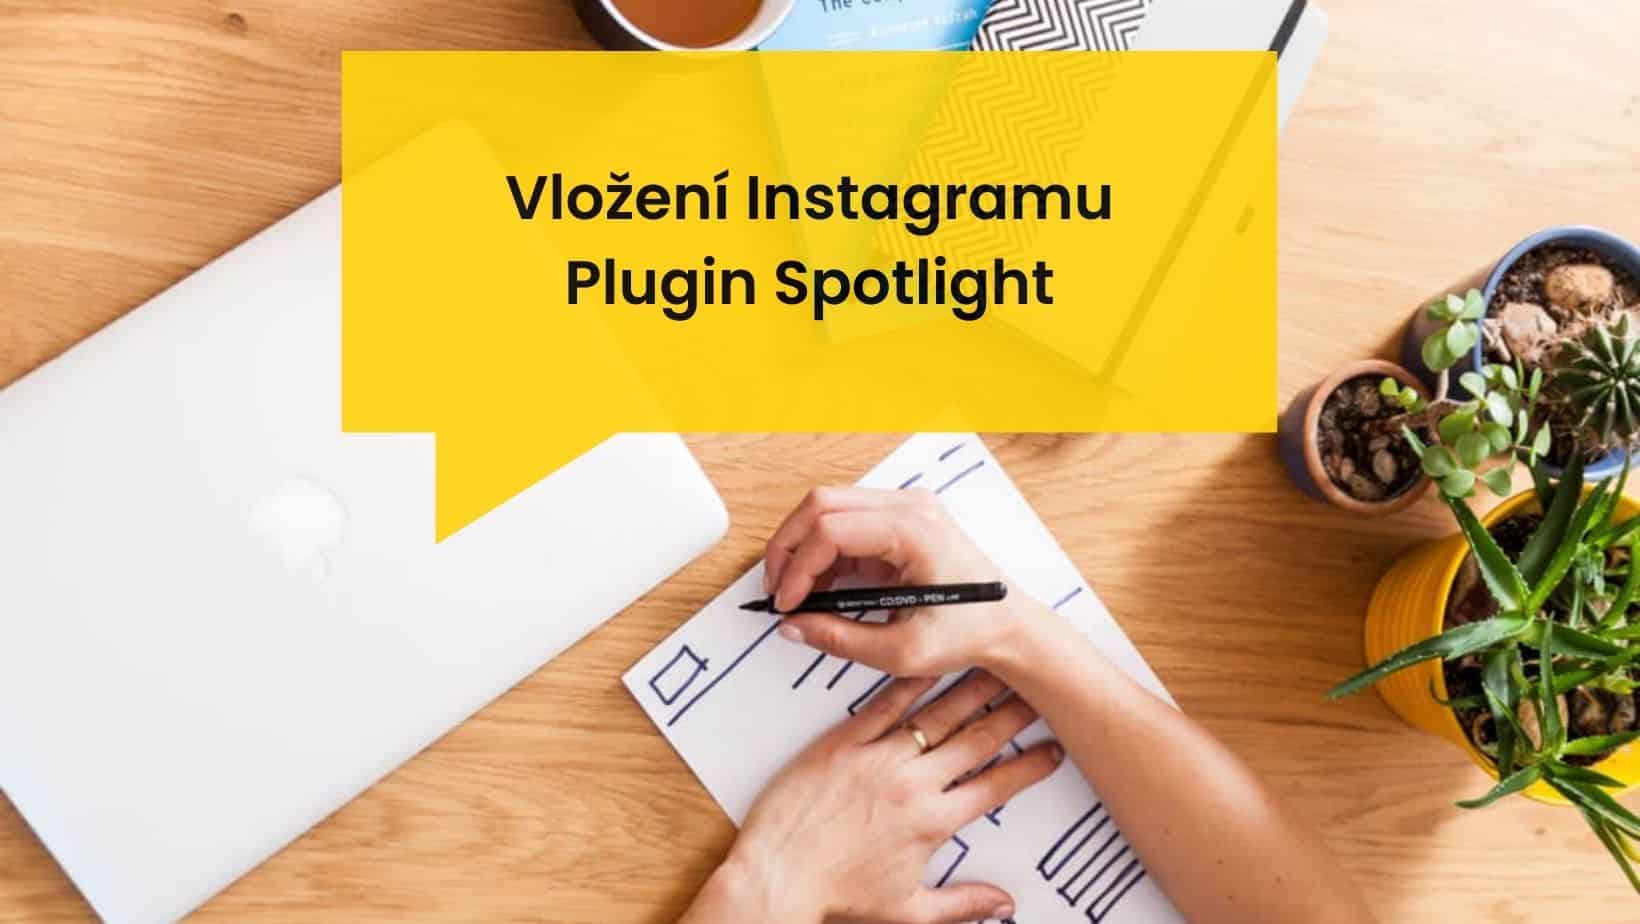 Vložení Instagramu, Plugin Spotlight